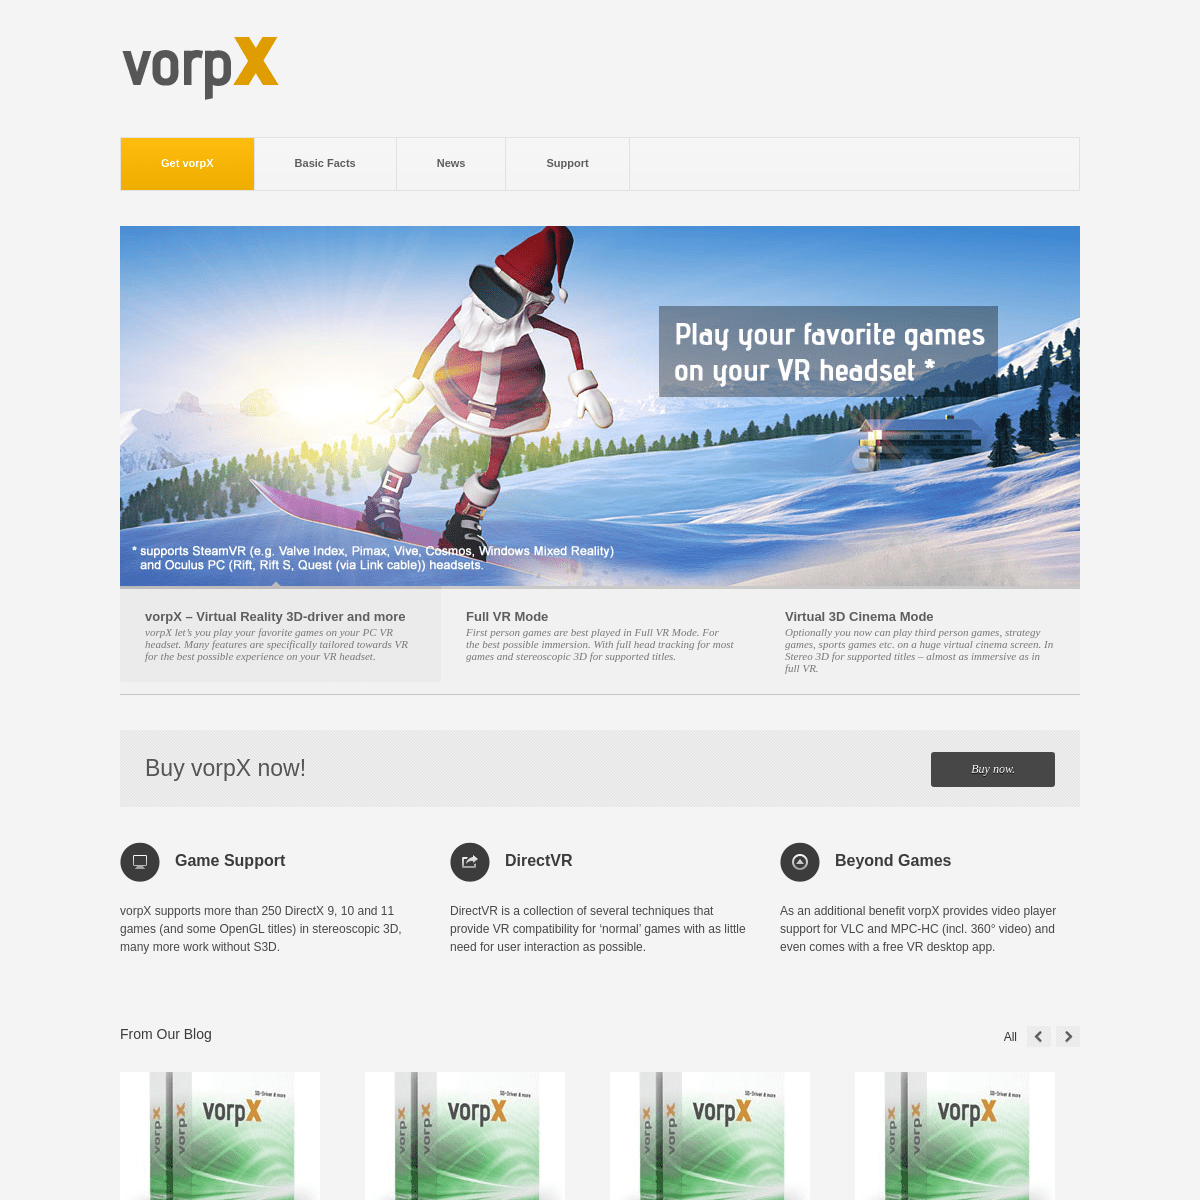 A complete backup of vorpx.com